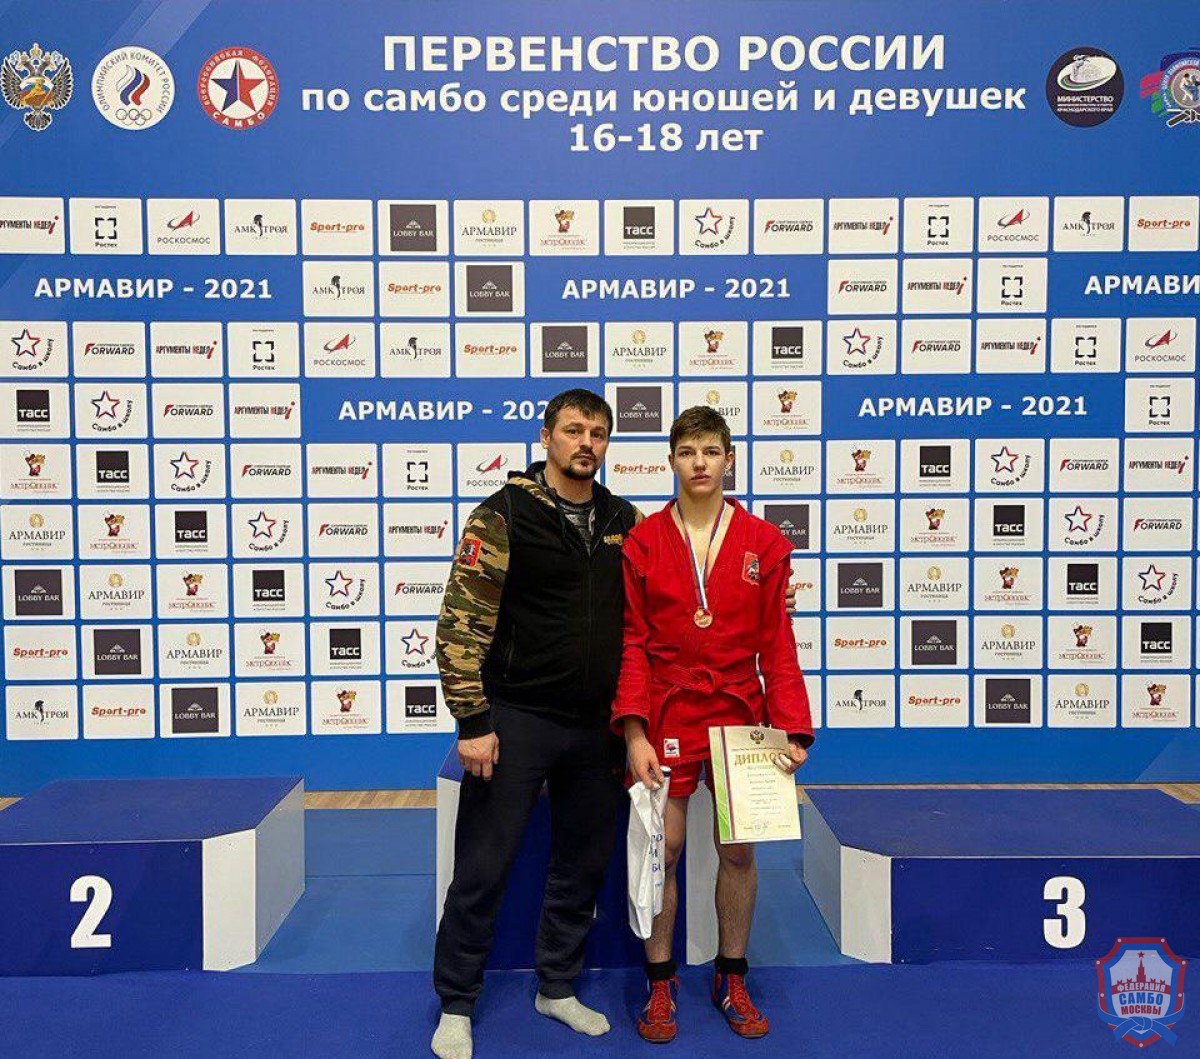 Во второй день Первенства России по самбо московские самбисты завоевали 5 медалей